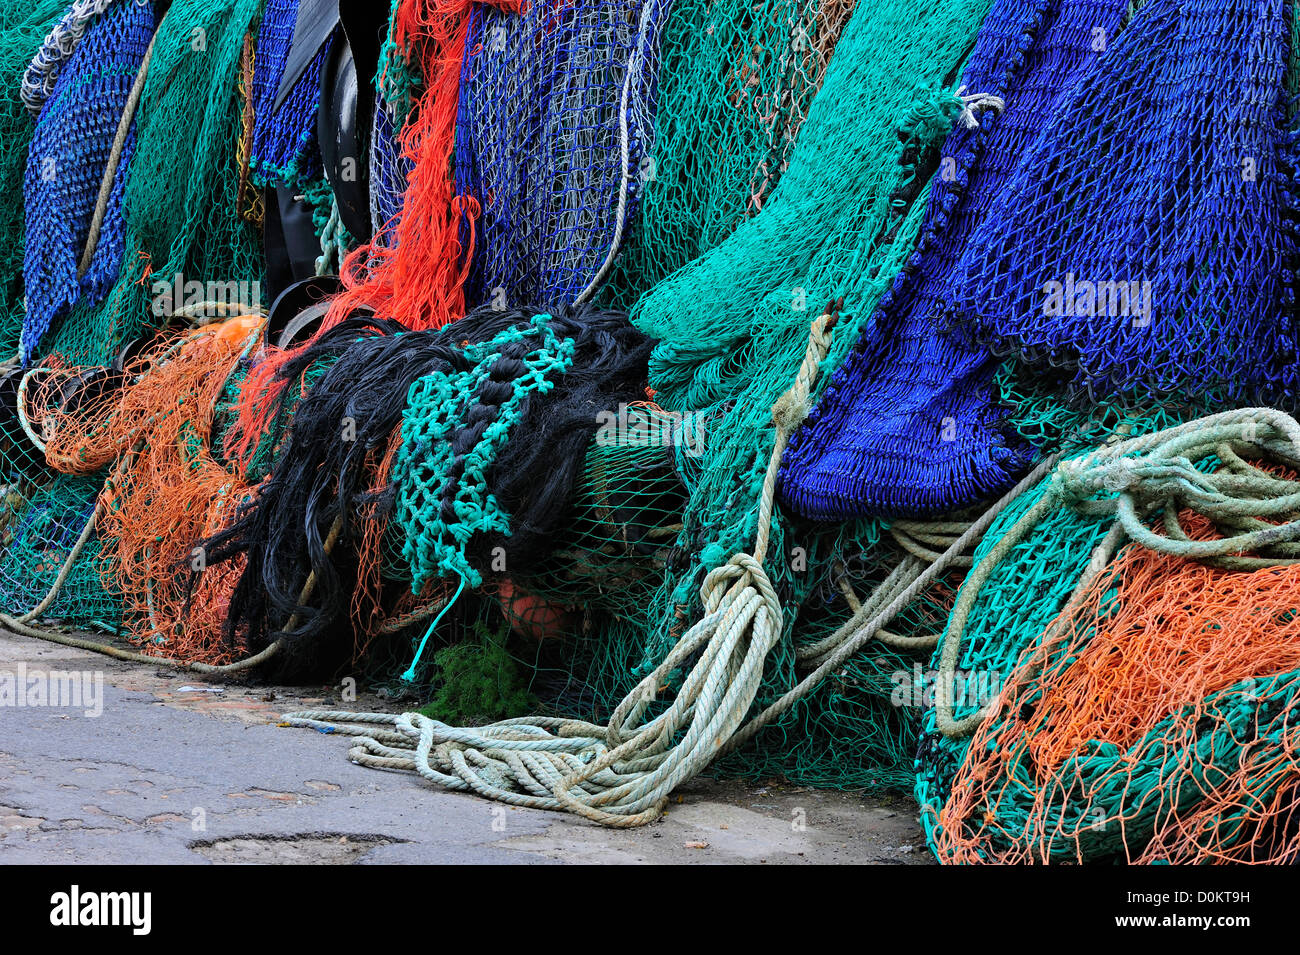 Les filets de pêche de chalutiers colorés sur le quai à Lyme Regis Harbour le long de la Côte Jurassique, Dorset, dans le sud de l'Angleterre, Royaume-Uni Banque D'Images